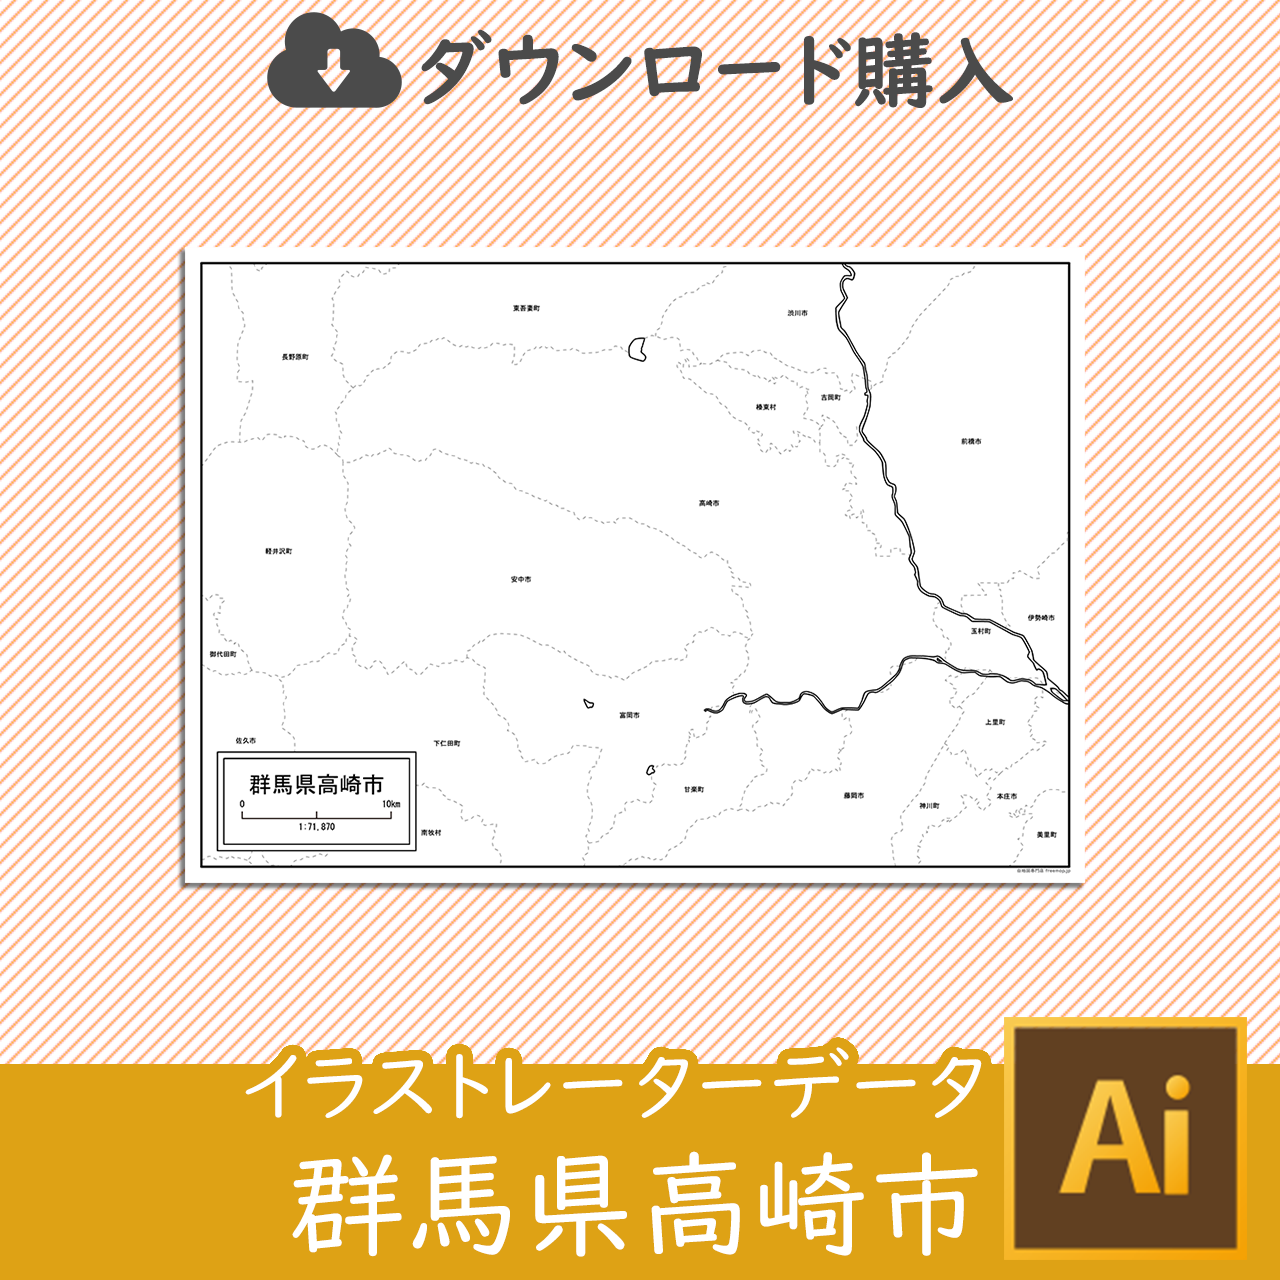 高崎市のaiデータのサムネイル画像